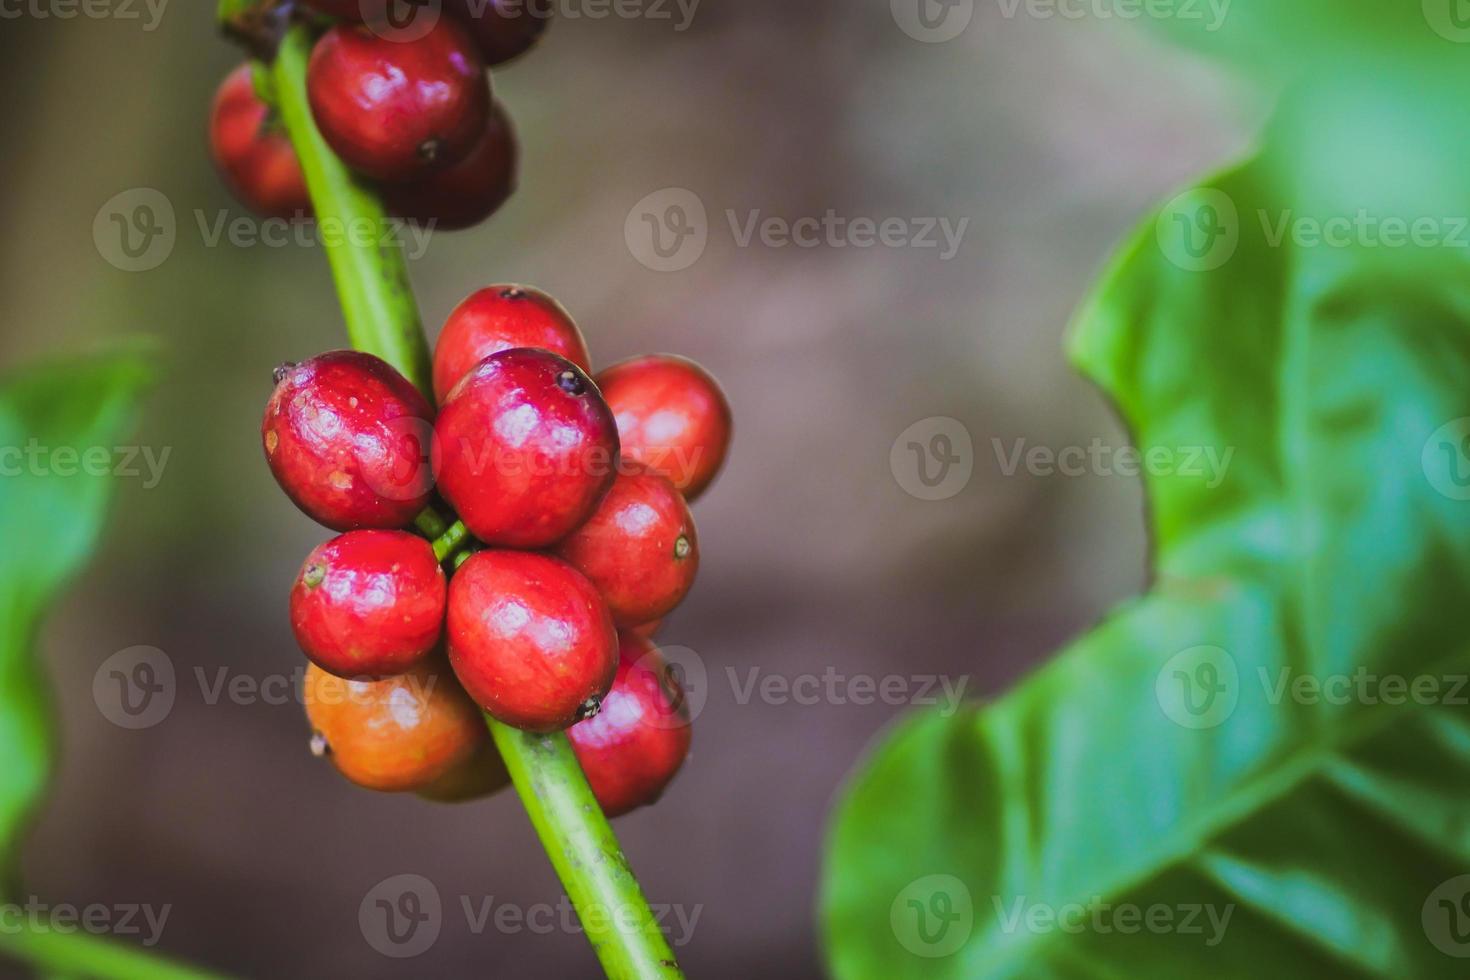 reife Kaffeepflanzen, die bereit sind, geerntet zu werden. foto